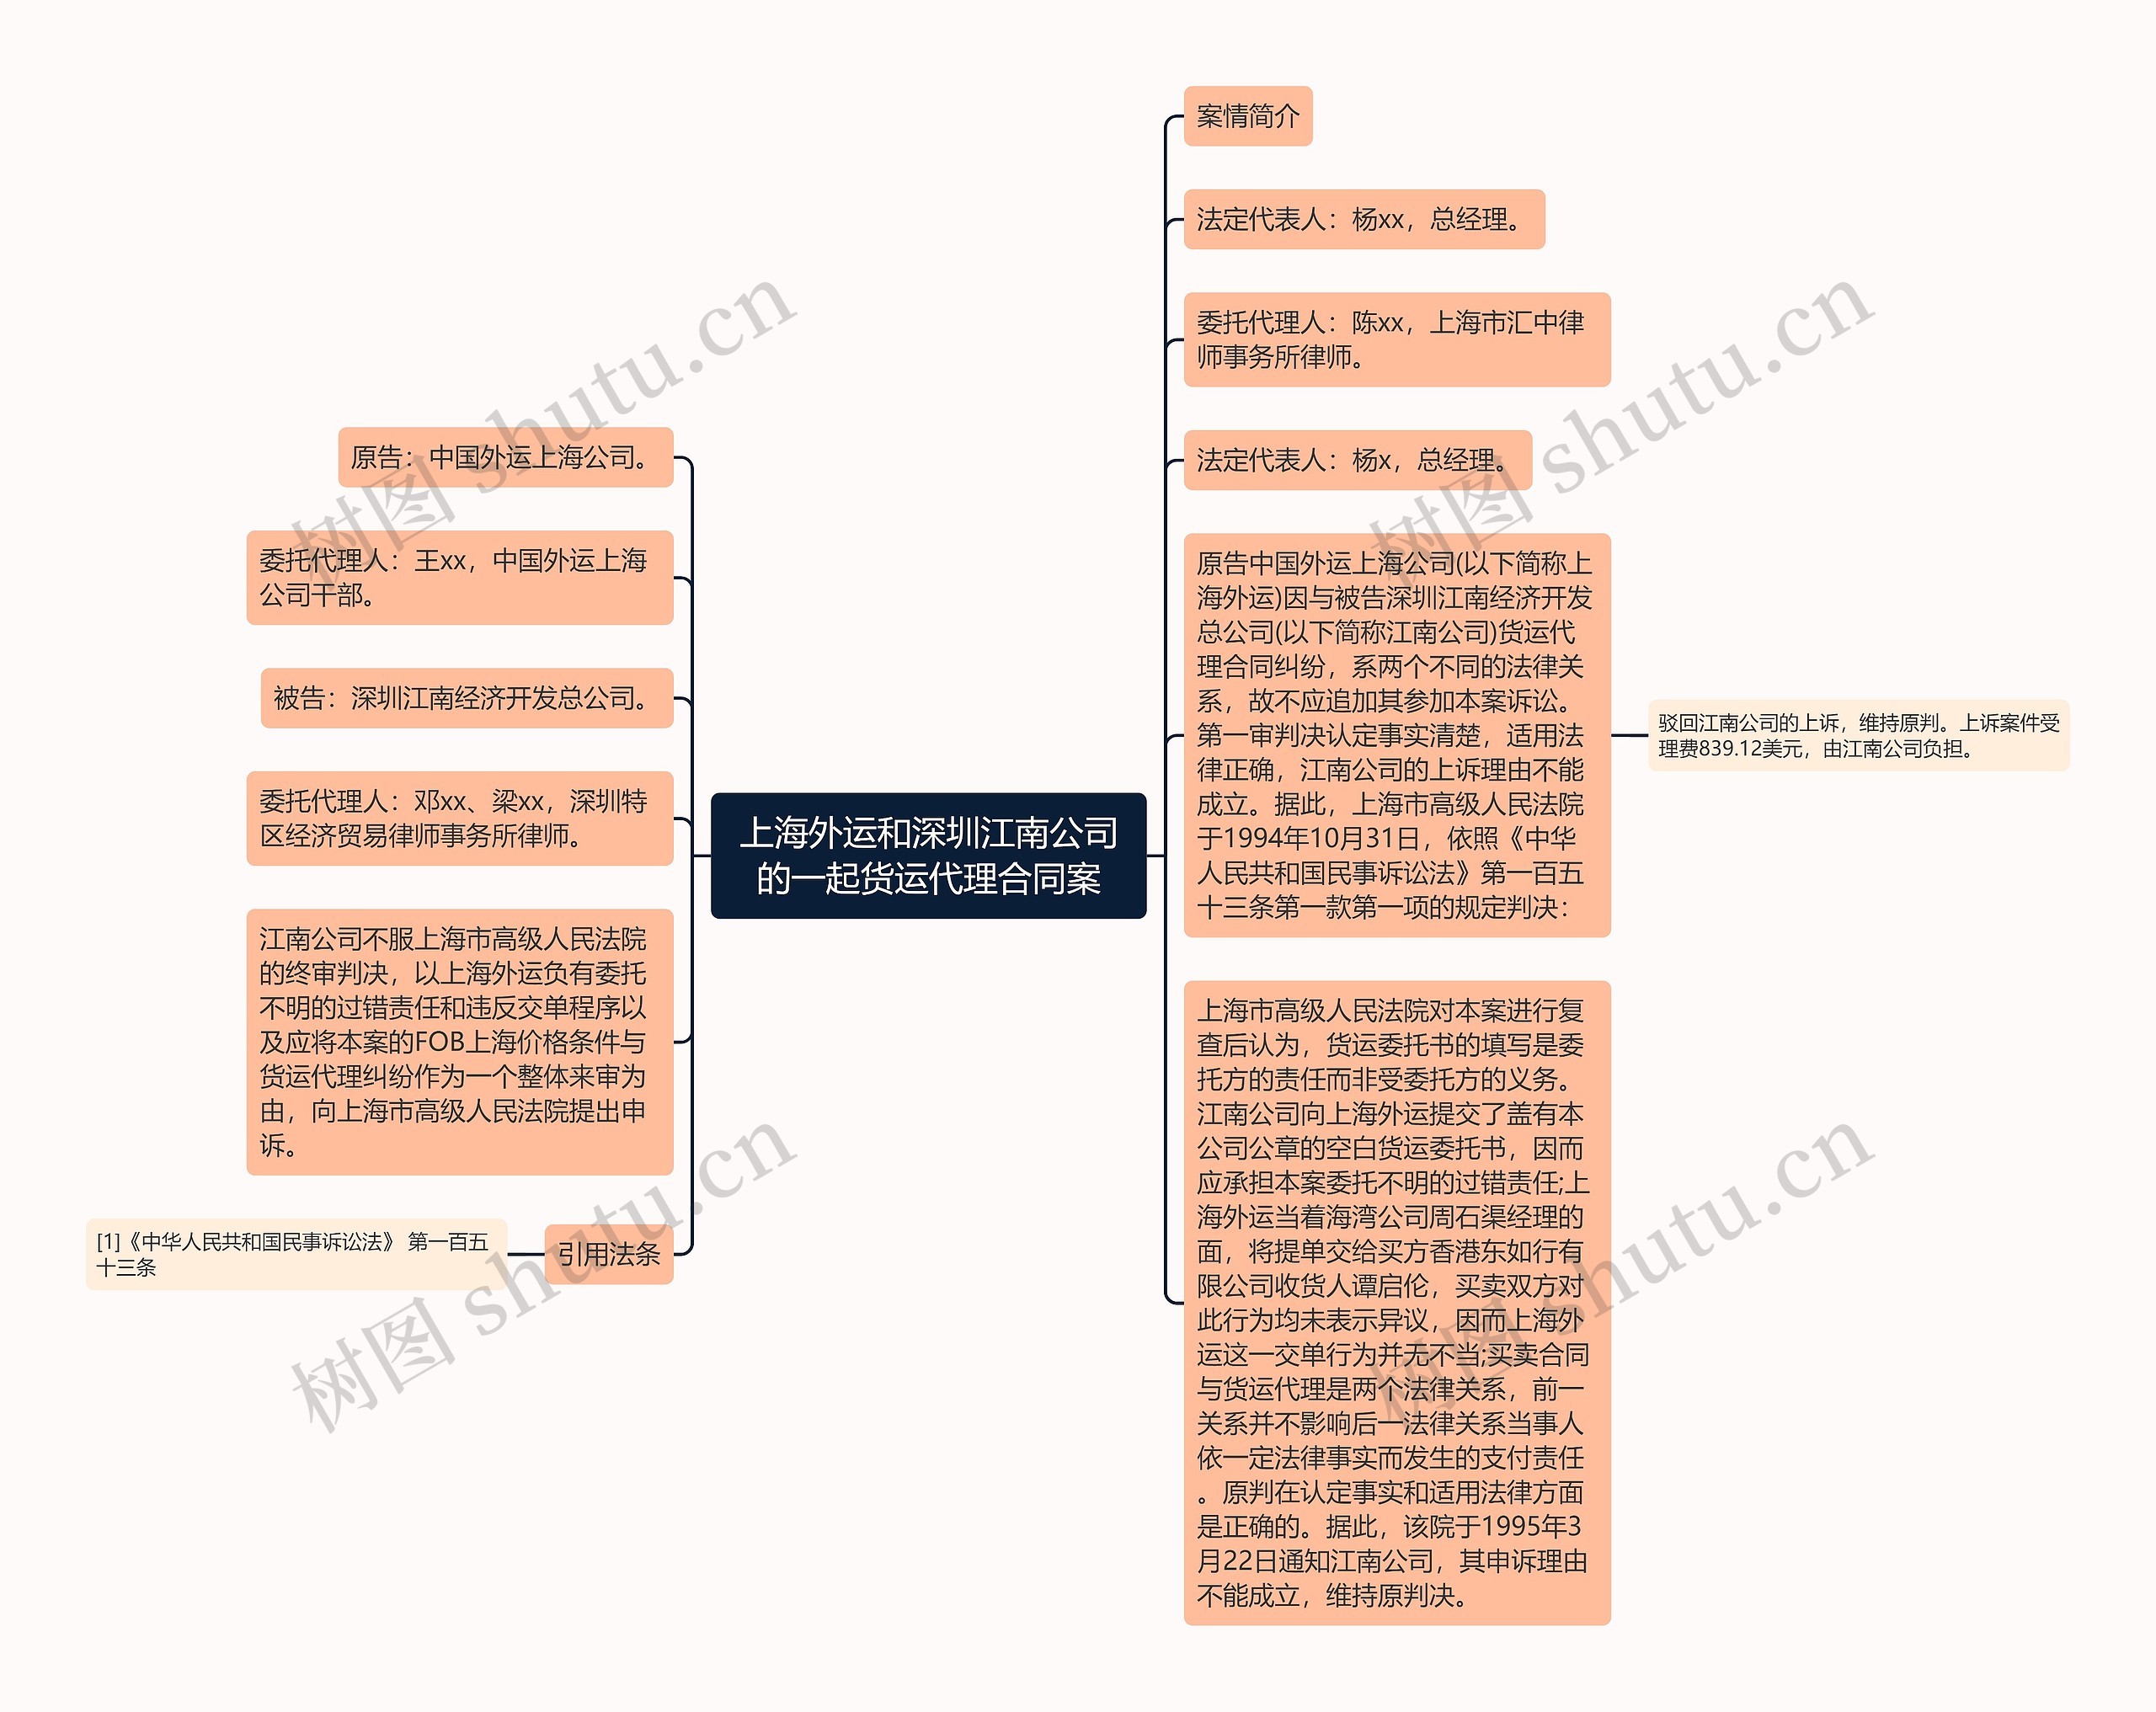 上海外运和深圳江南公司的一起货运代理合同案思维导图